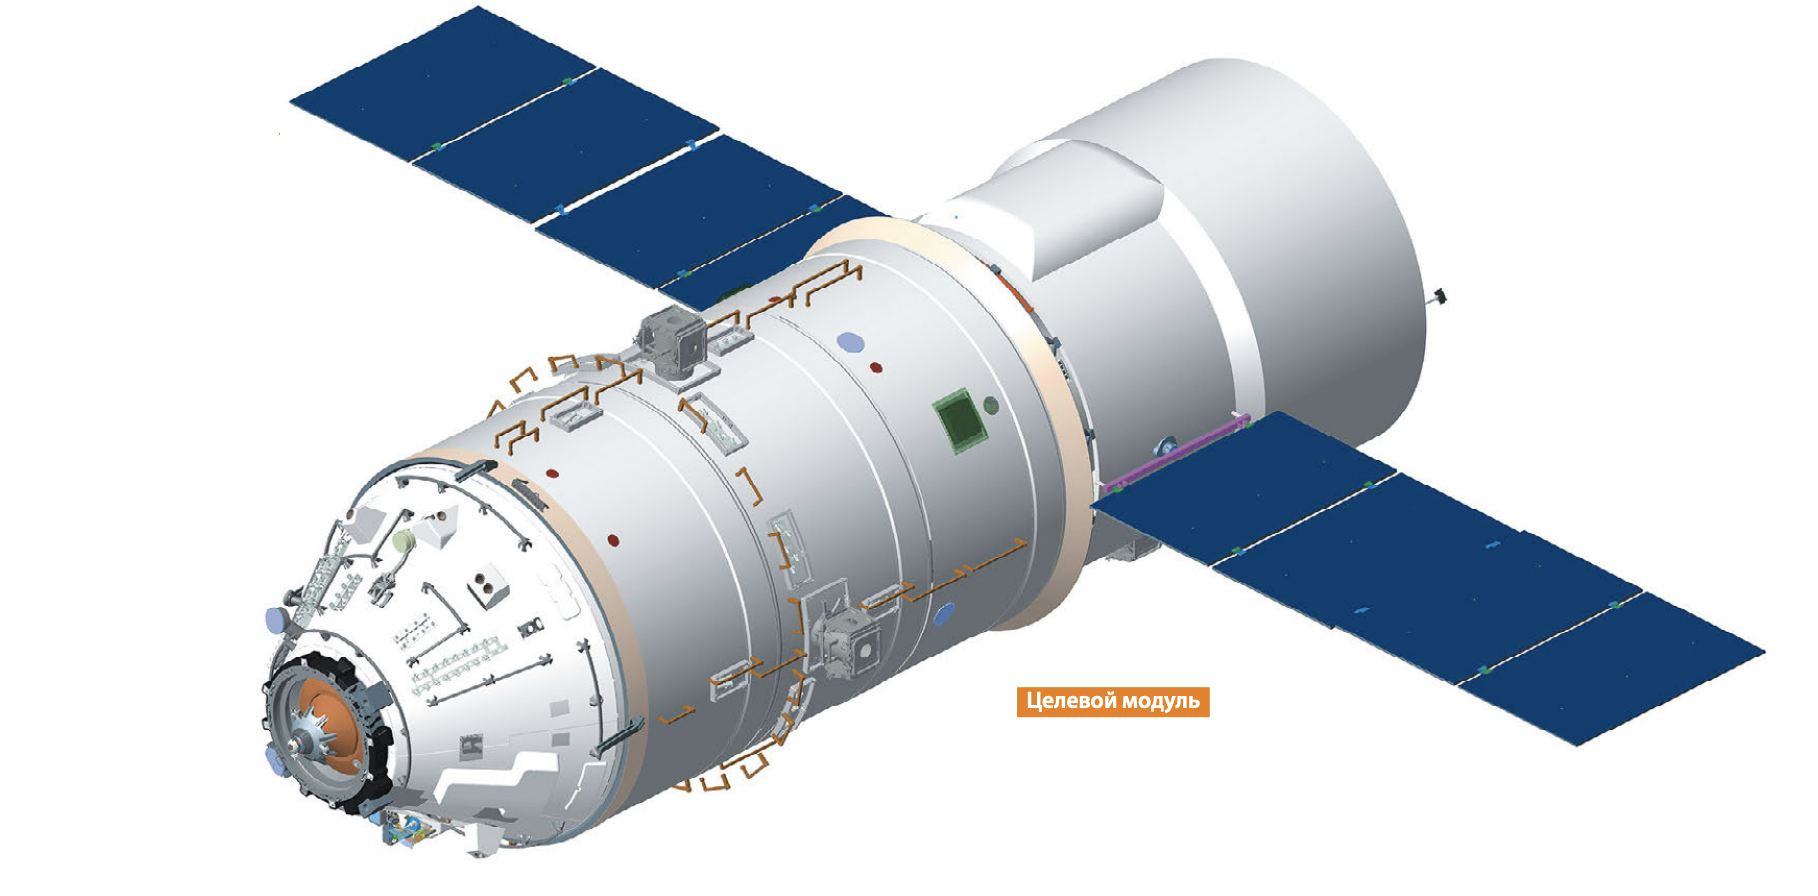 В новом выпуске журнала «Русский космос» раскрыты подробности одного из вариантов РОСС - 5